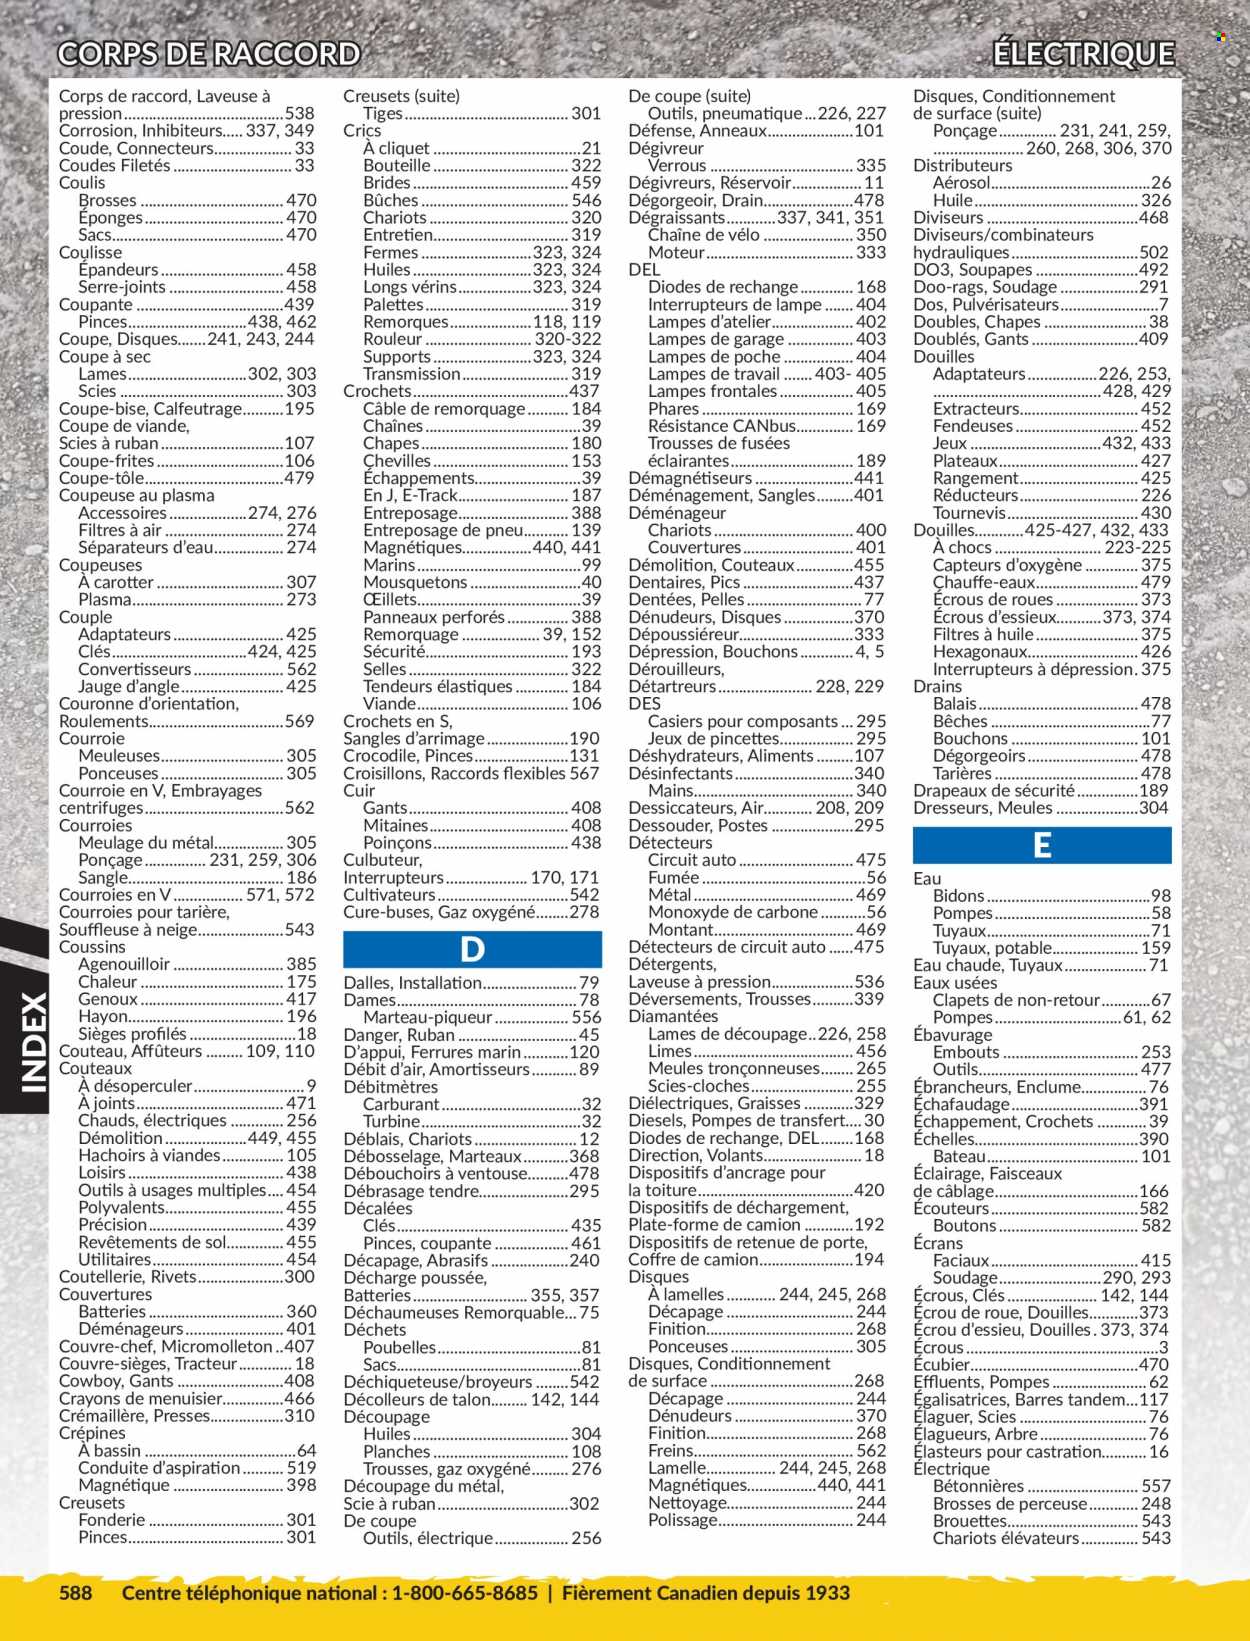 thumbnail - Circulaire Princess Auto - Produits soldés - éponge, lampe, interrupteur, chevilles, perceuse, scie, scies-cloches, tracteur, déchiqueteuse, gants, coffre, couteau. Page 592.